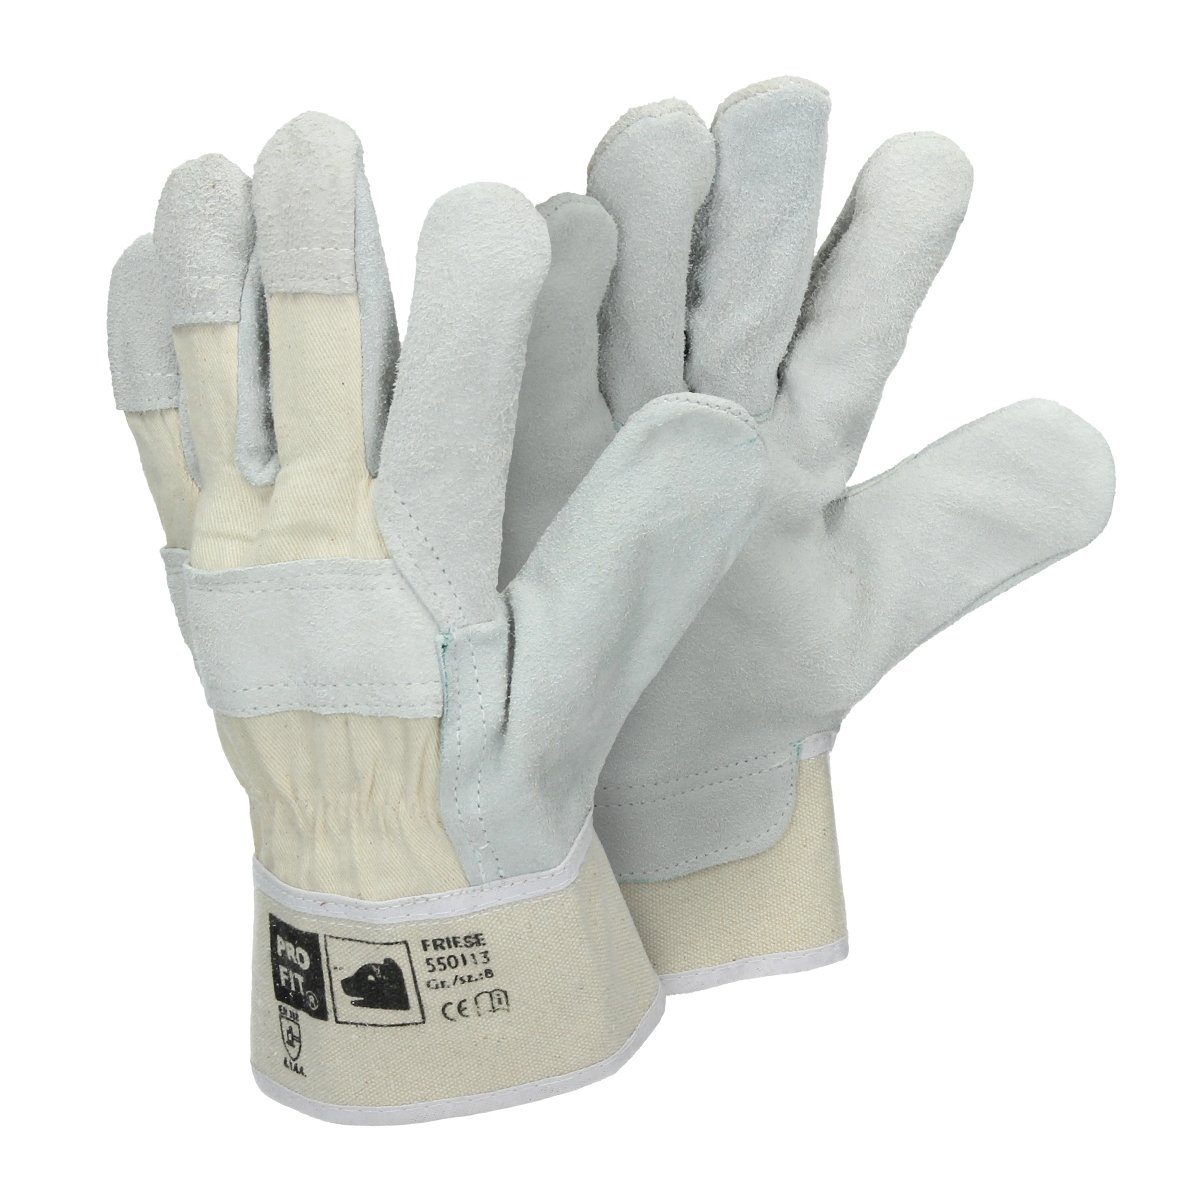 Germany - Arbeitshandschuh-Set Größe Rindspaltleder-Handschuhe ECD Pro-Fit® 8/M Natur Paar 72